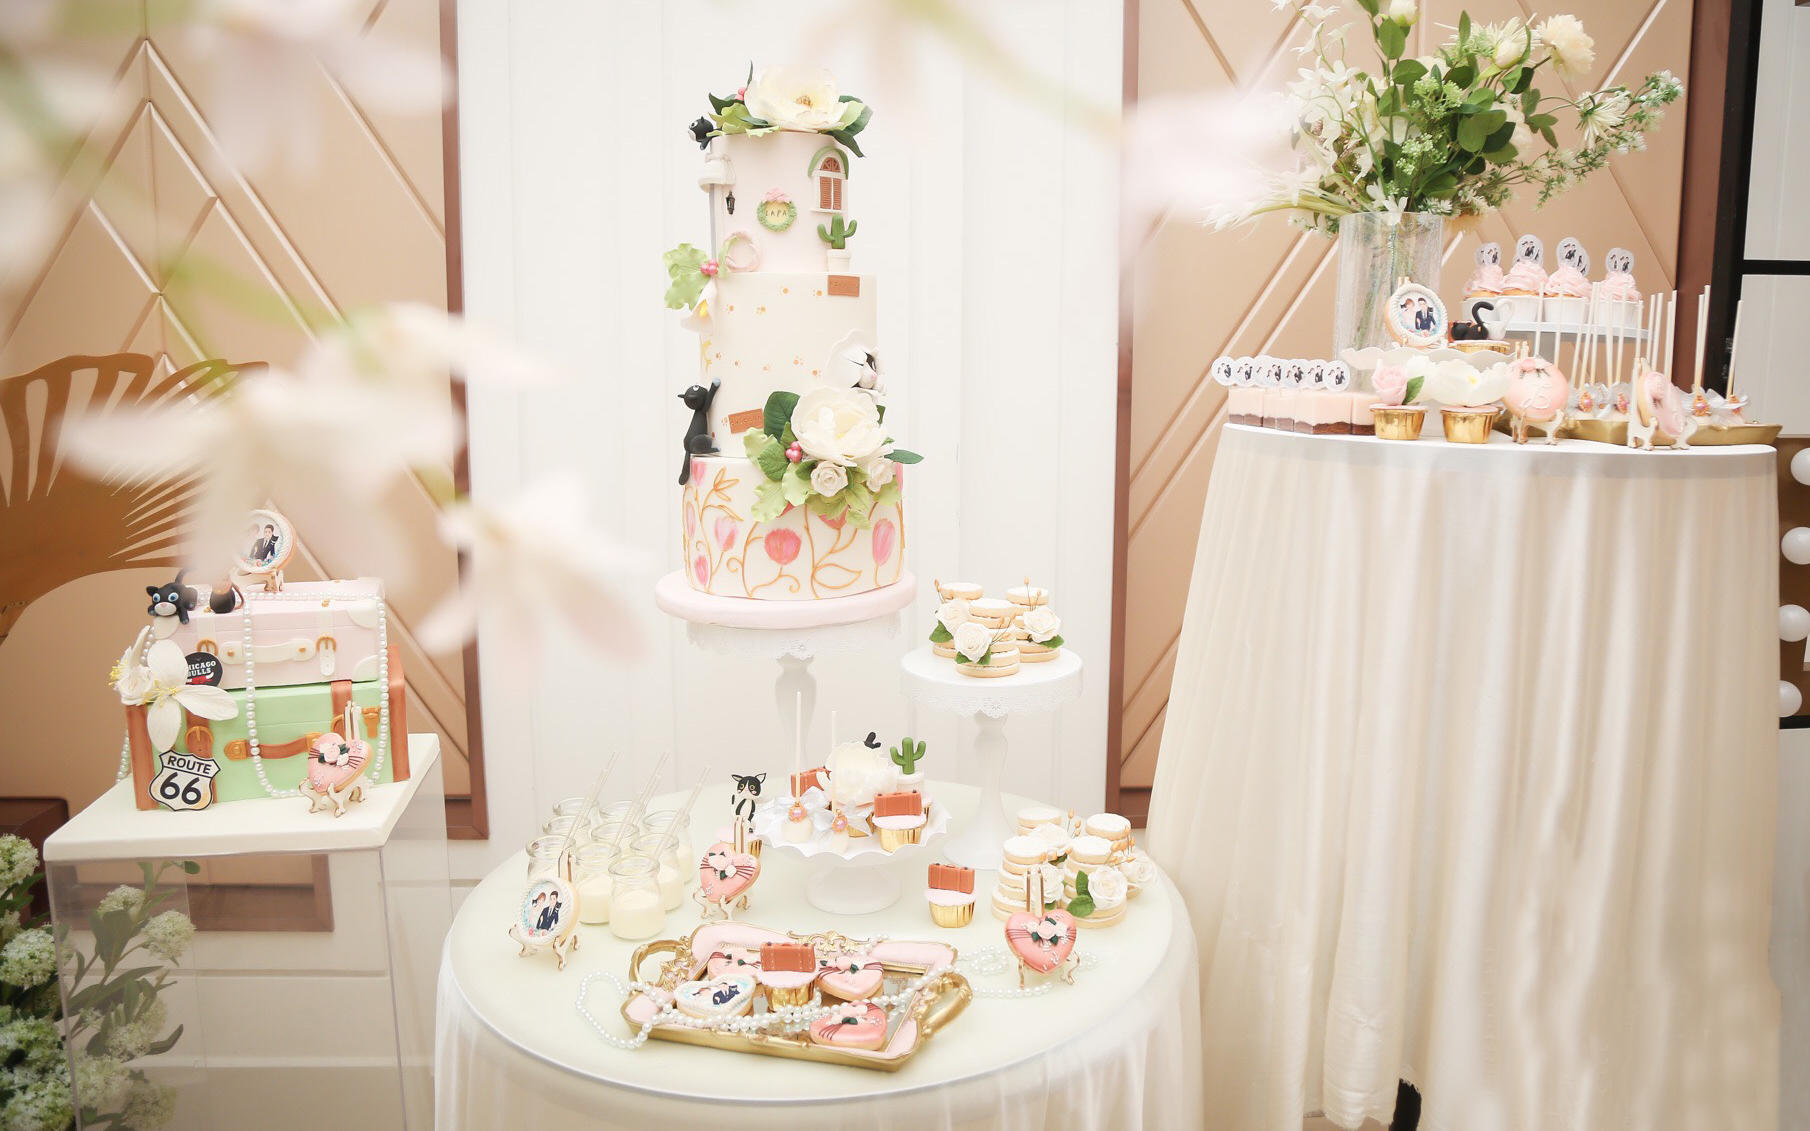 【晶品甜品台】跨越双城的爱恋主题婚礼蛋糕